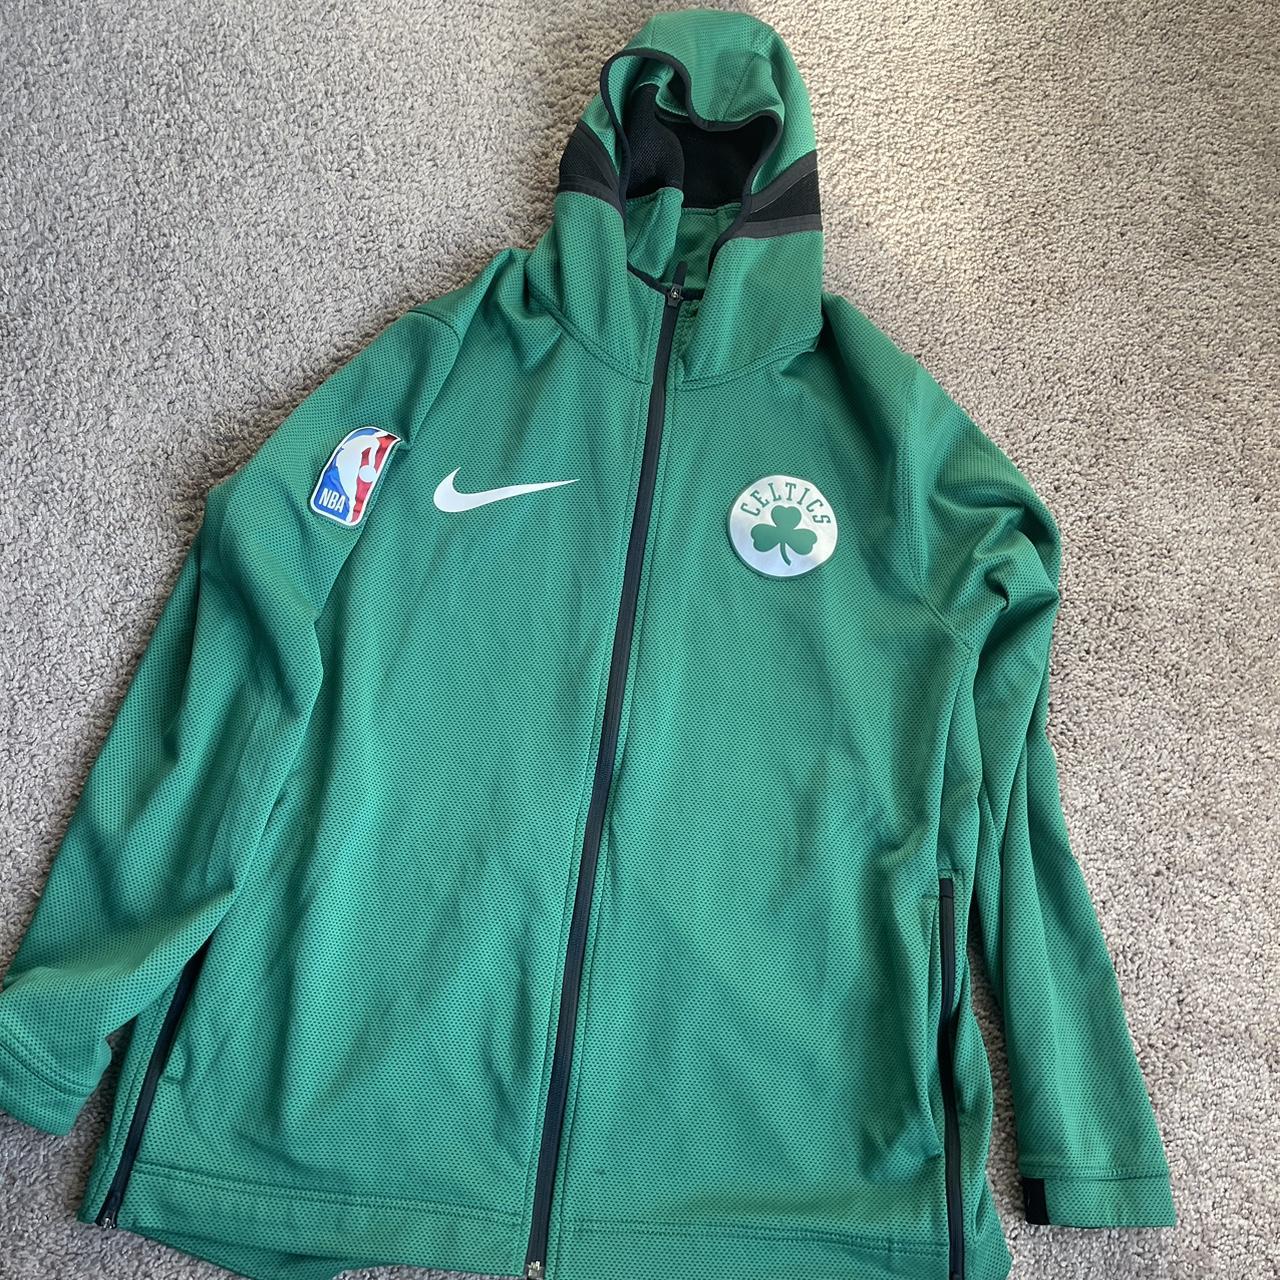 Nike Men's Boston Celtics Green Showtime Full Zip Hoodie